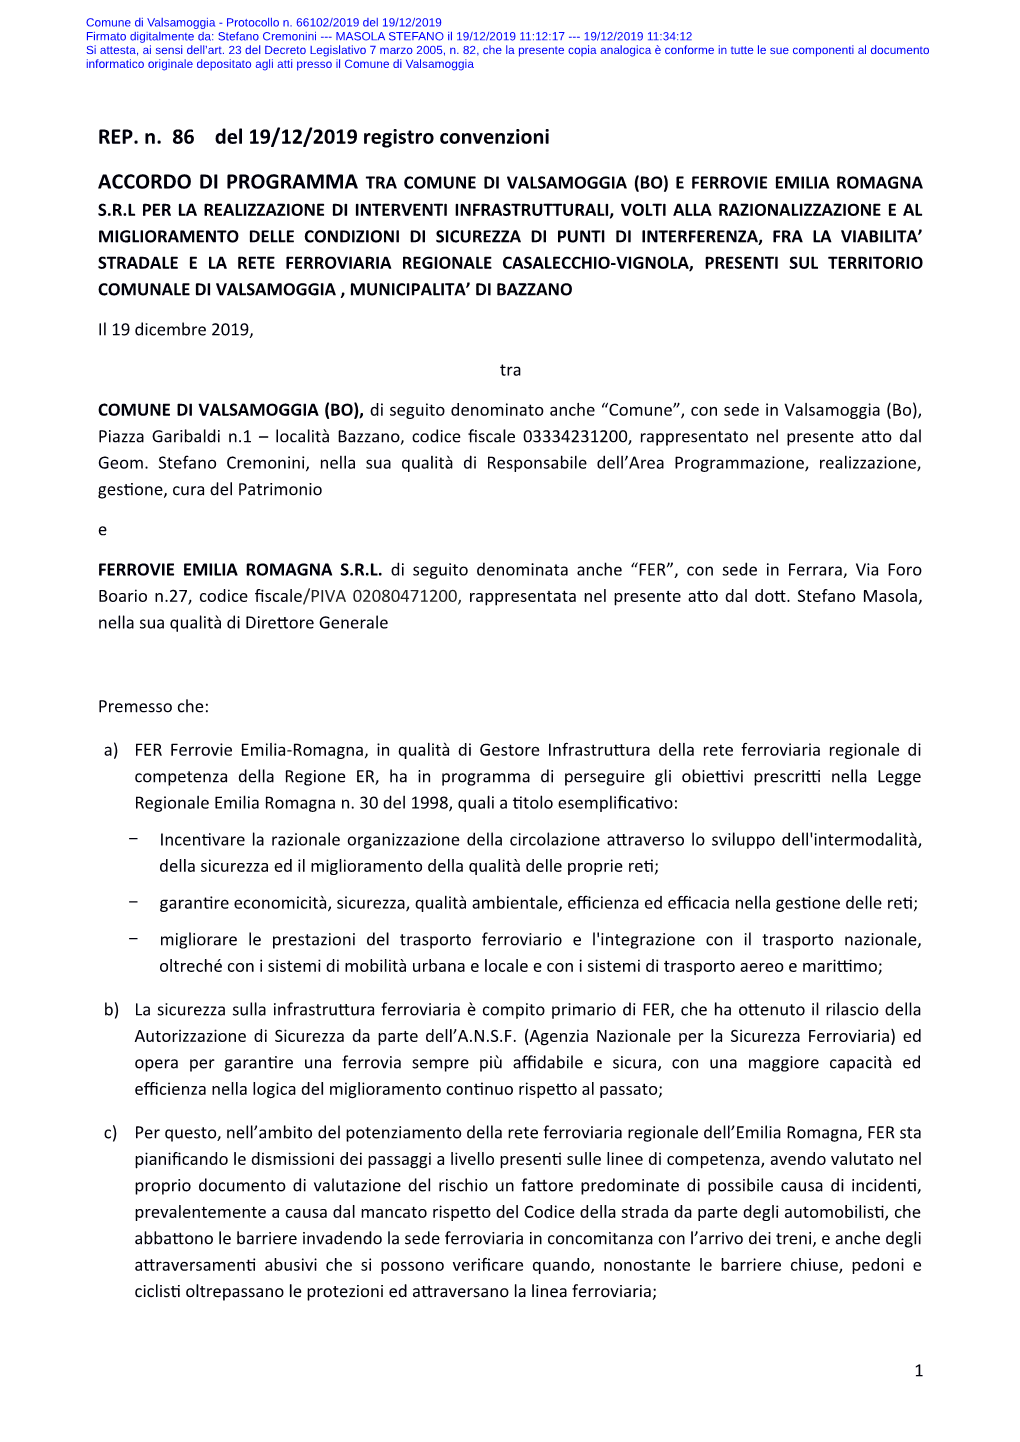 Accordo Di Programma Tra Comune Di Valsamoggia (BO) E Ferrovie Emilia